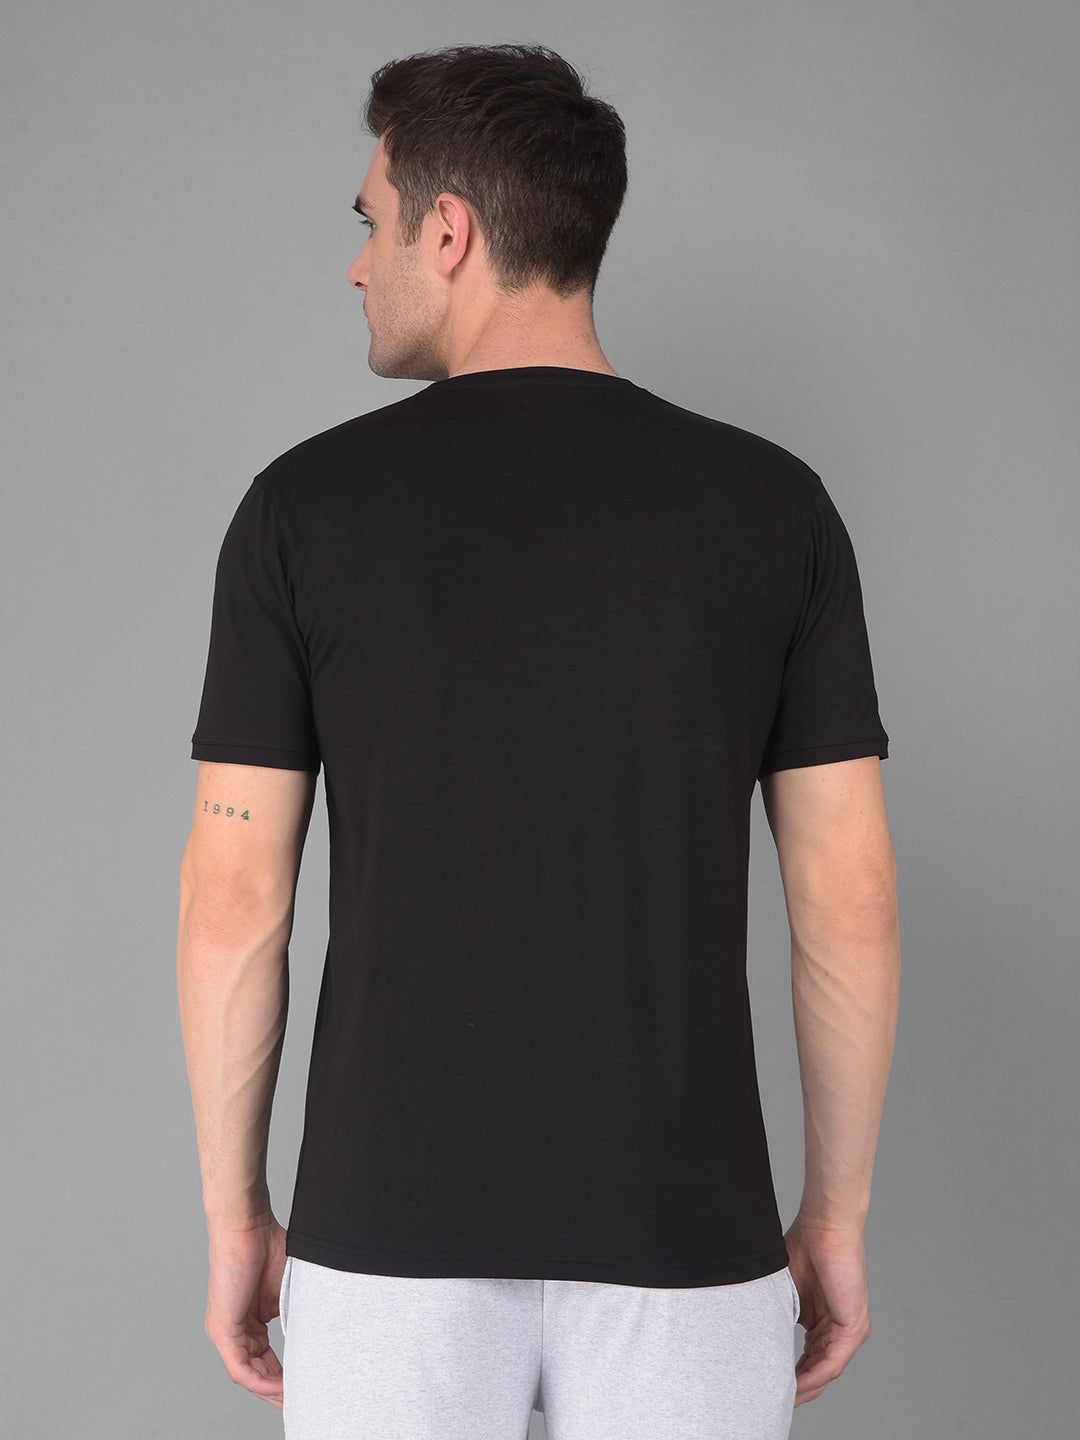 cobb solid black round neck t-shirt